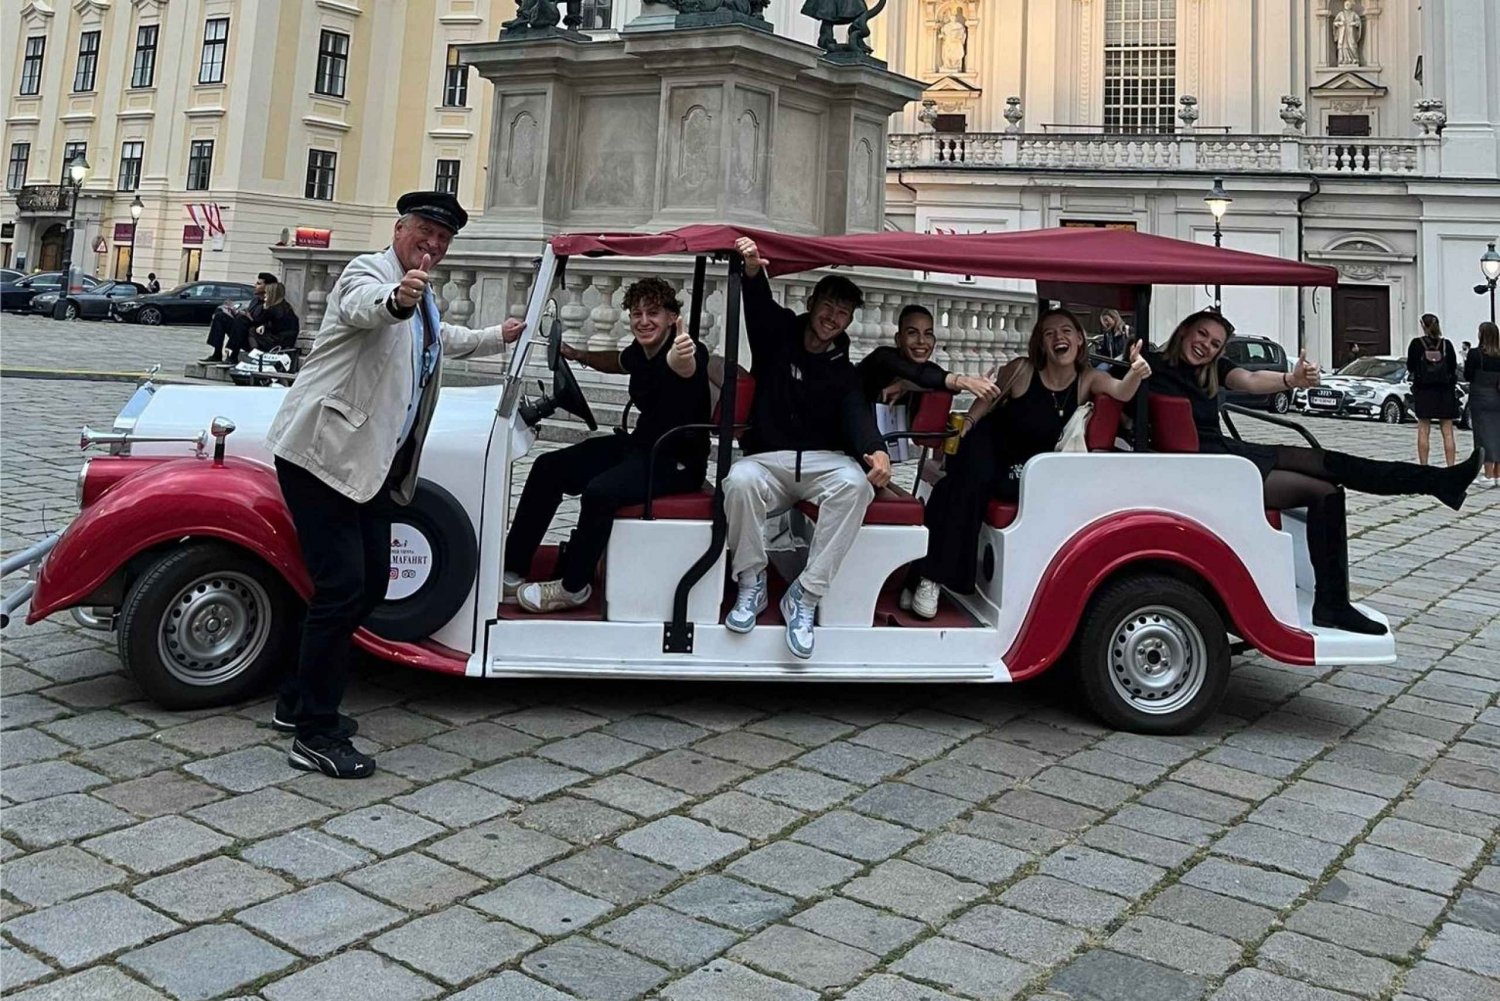 Viena: Passeio turístico pela cidade velha em um carro eletrônico de estilo vintage